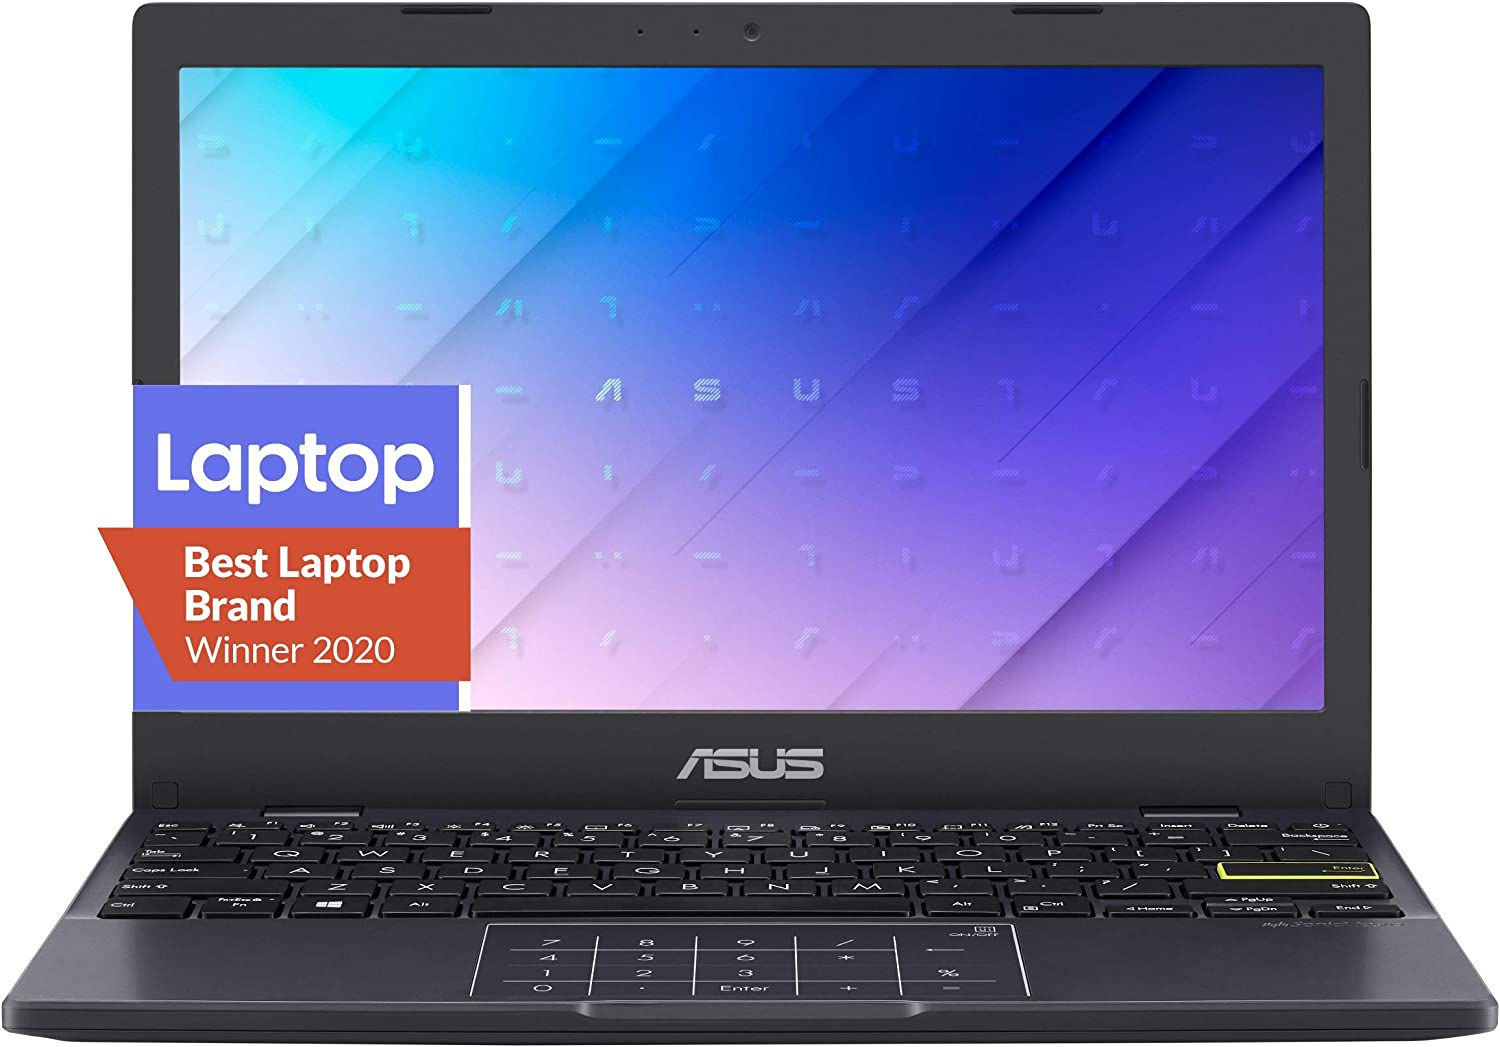 ASUS Vivobook Laptop L210